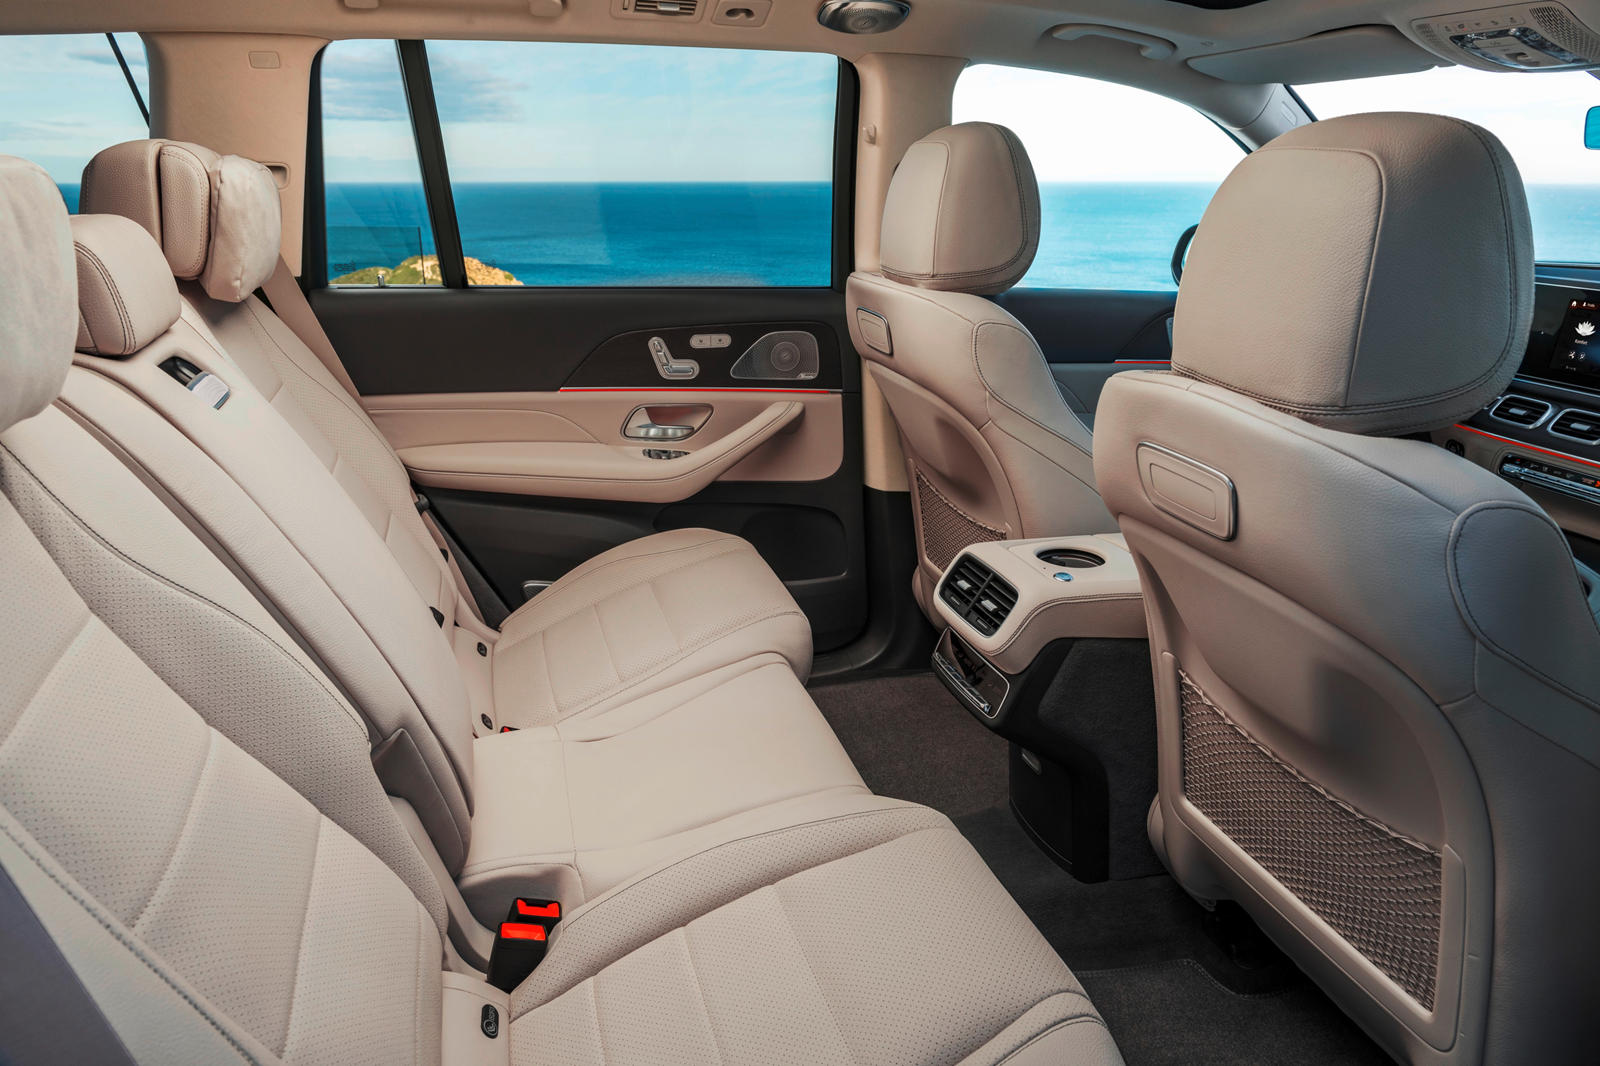 مرسيدس بنز GLS 500 interior - Seats